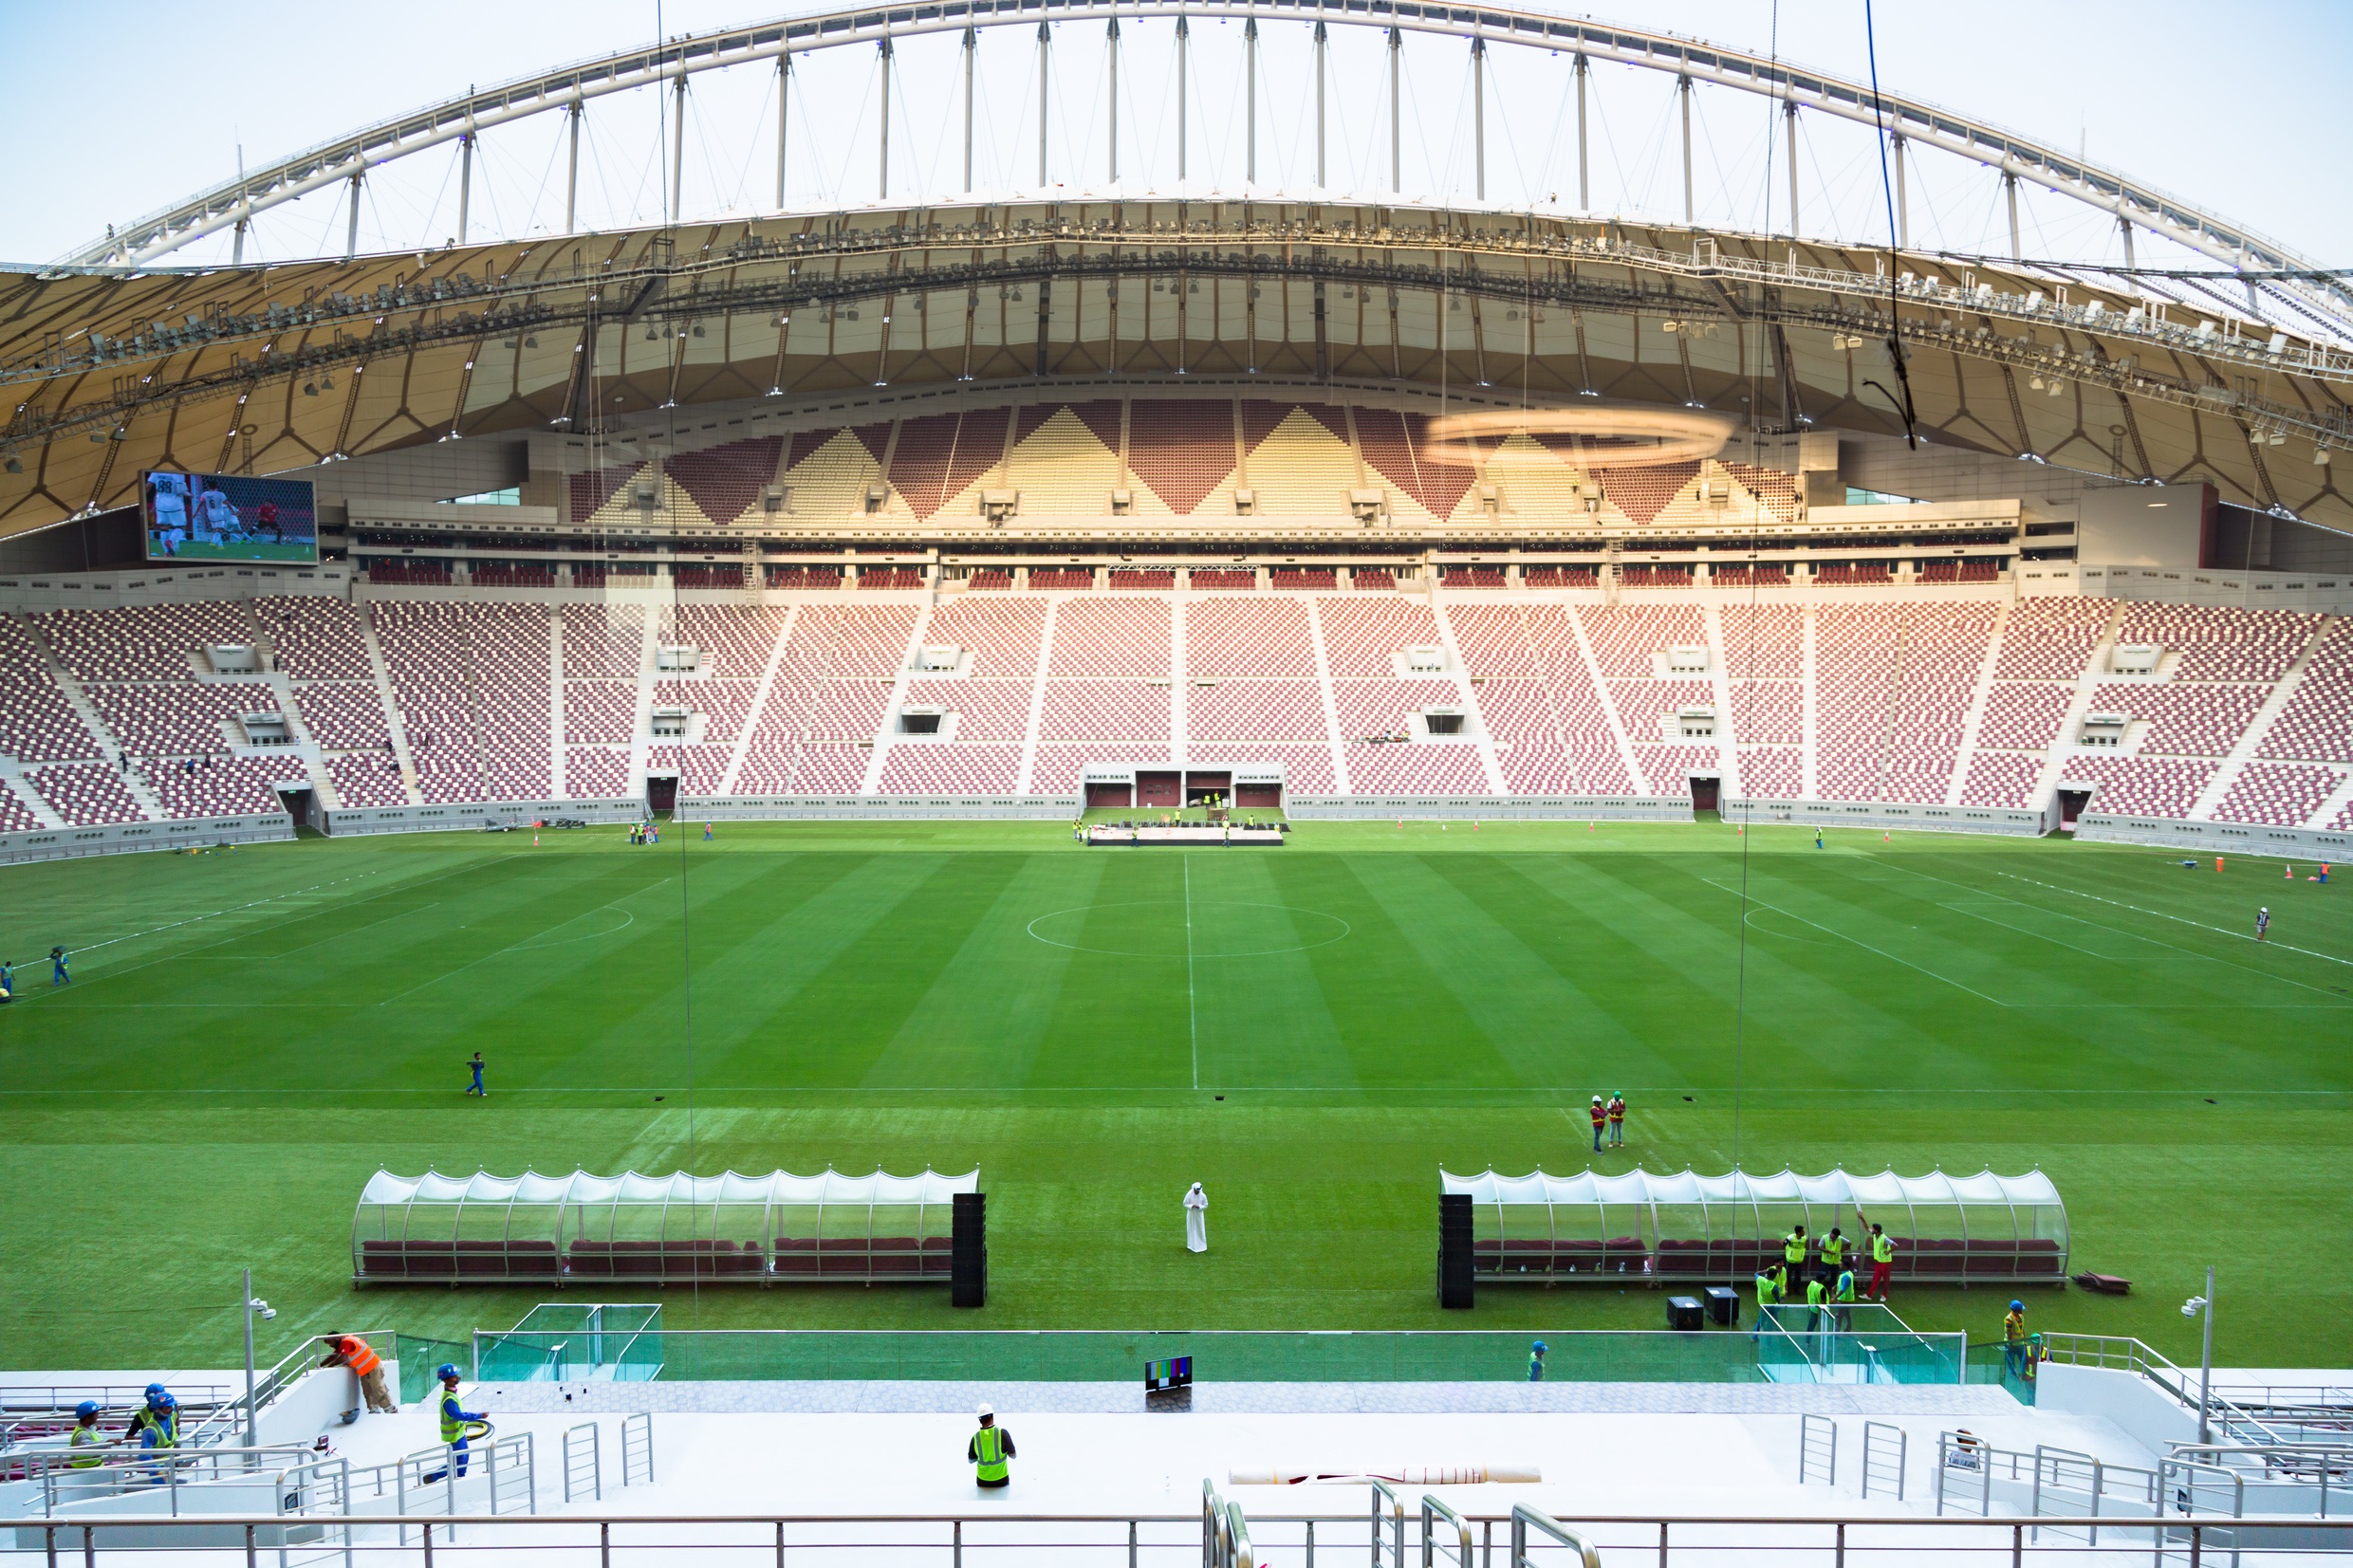 17-05-2017 El estadio internacional de fútbol Khalifa en Qatar.
DEPORTES 
SUPREME COMMITTEE FOR DELIVERY & LEGACY 2022
